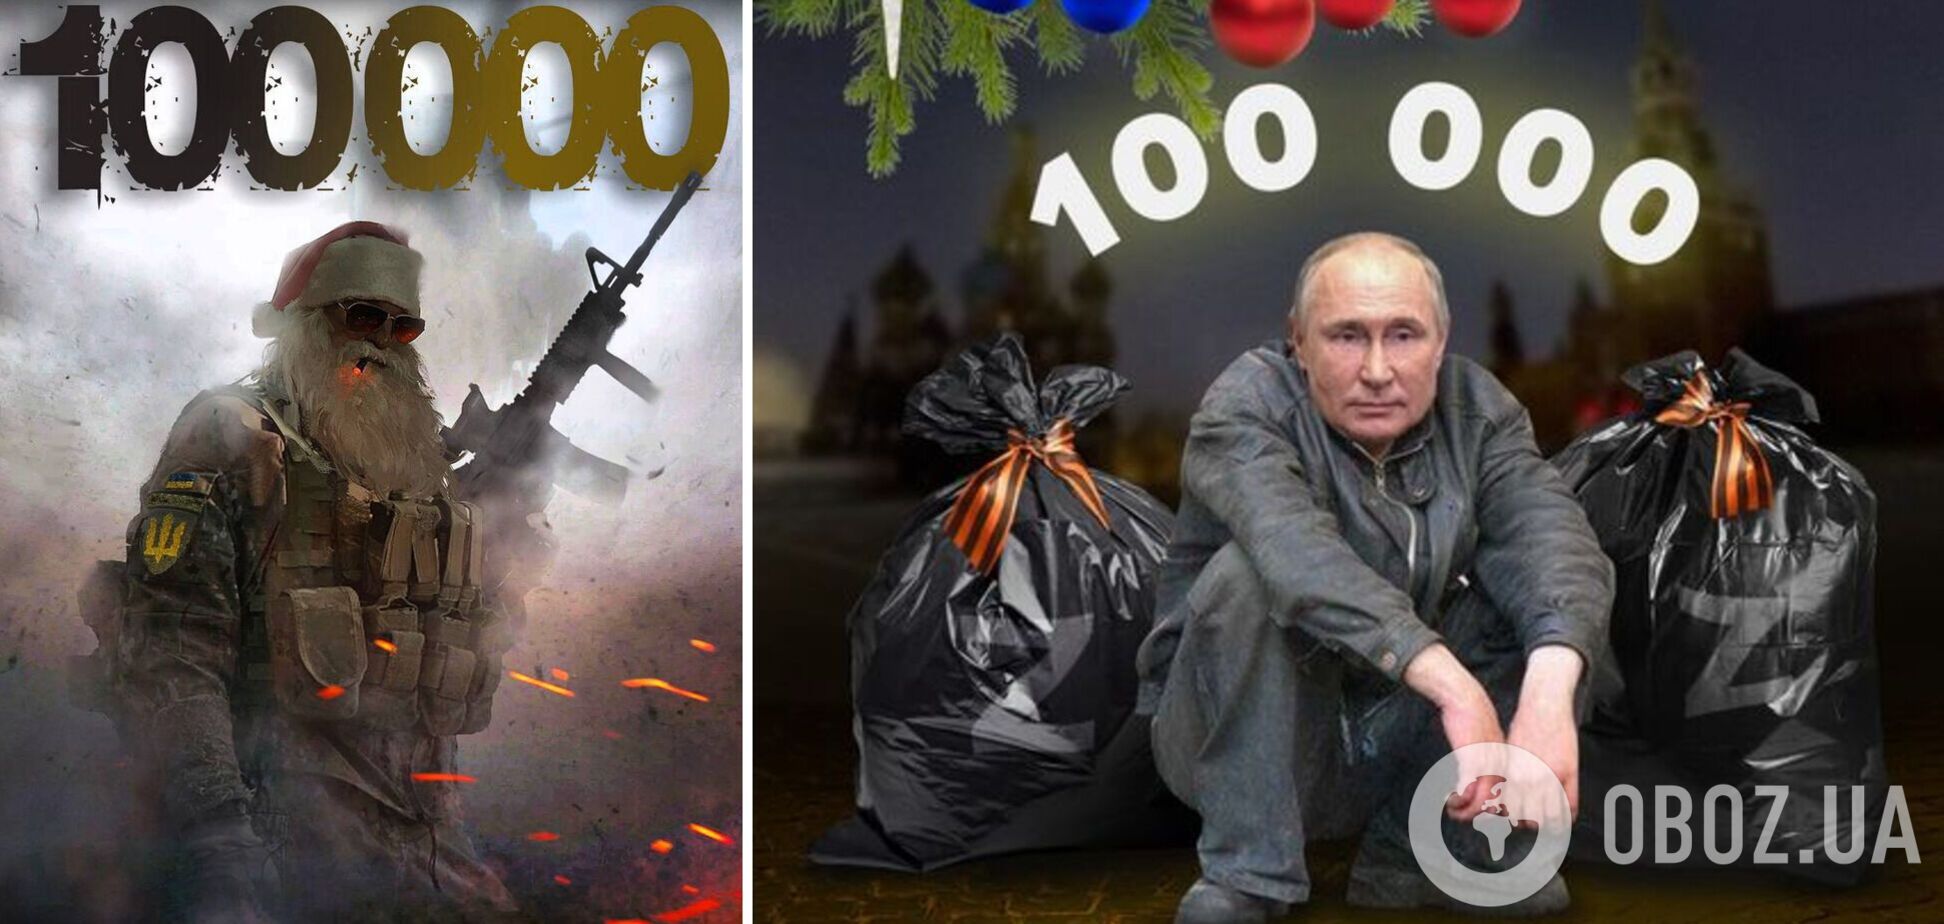 'Этот день настал': сеть взбудоражили мемы о потере Россией 100 тыс. человек в войне против Украины